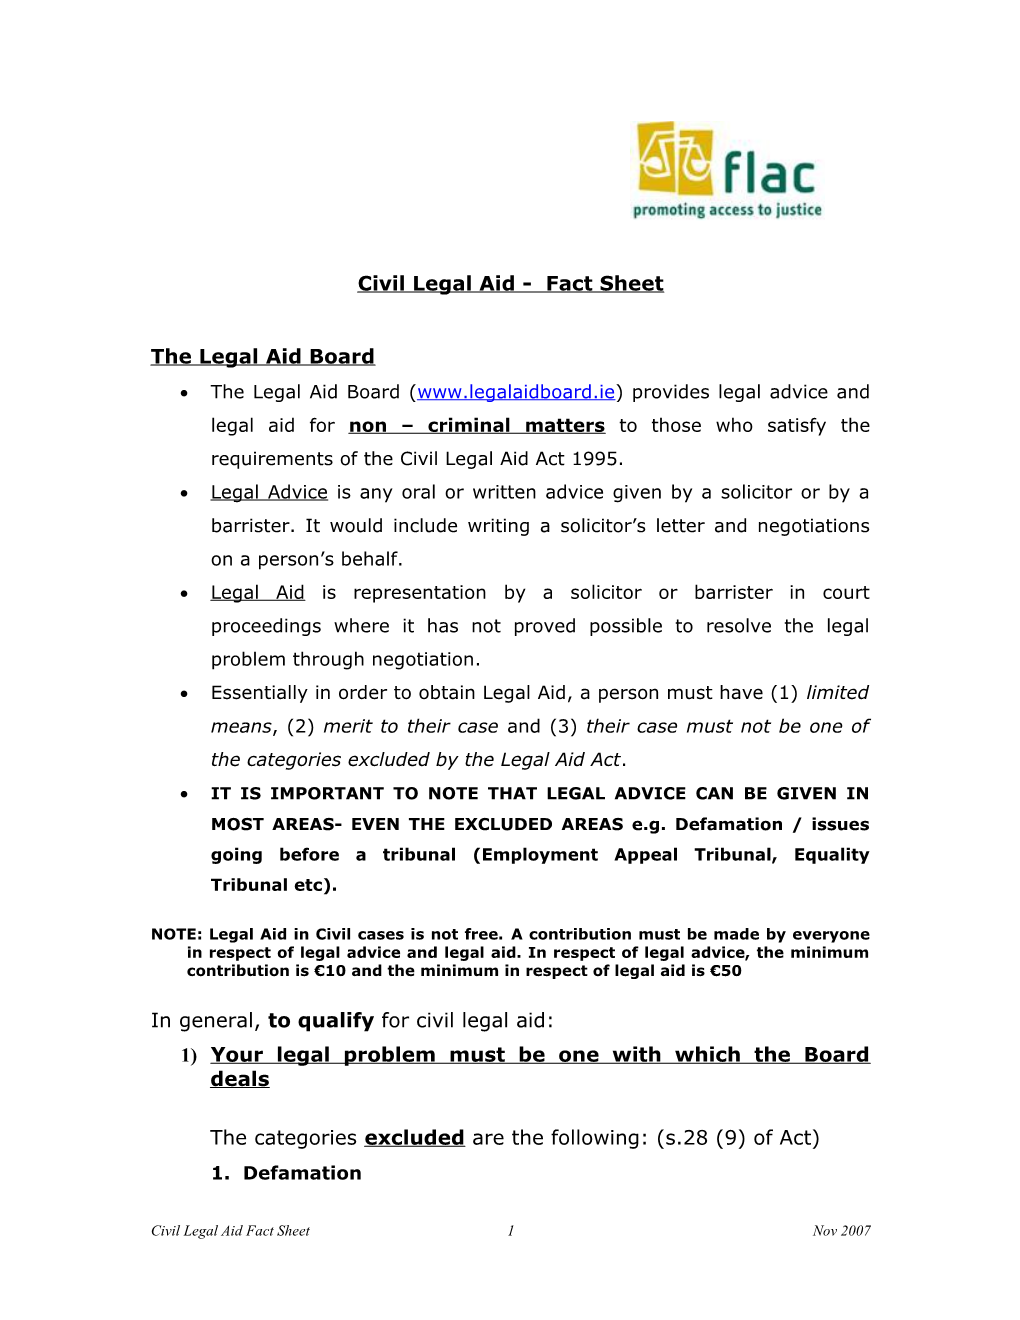 Civil Legal Aid - Fact Sheet